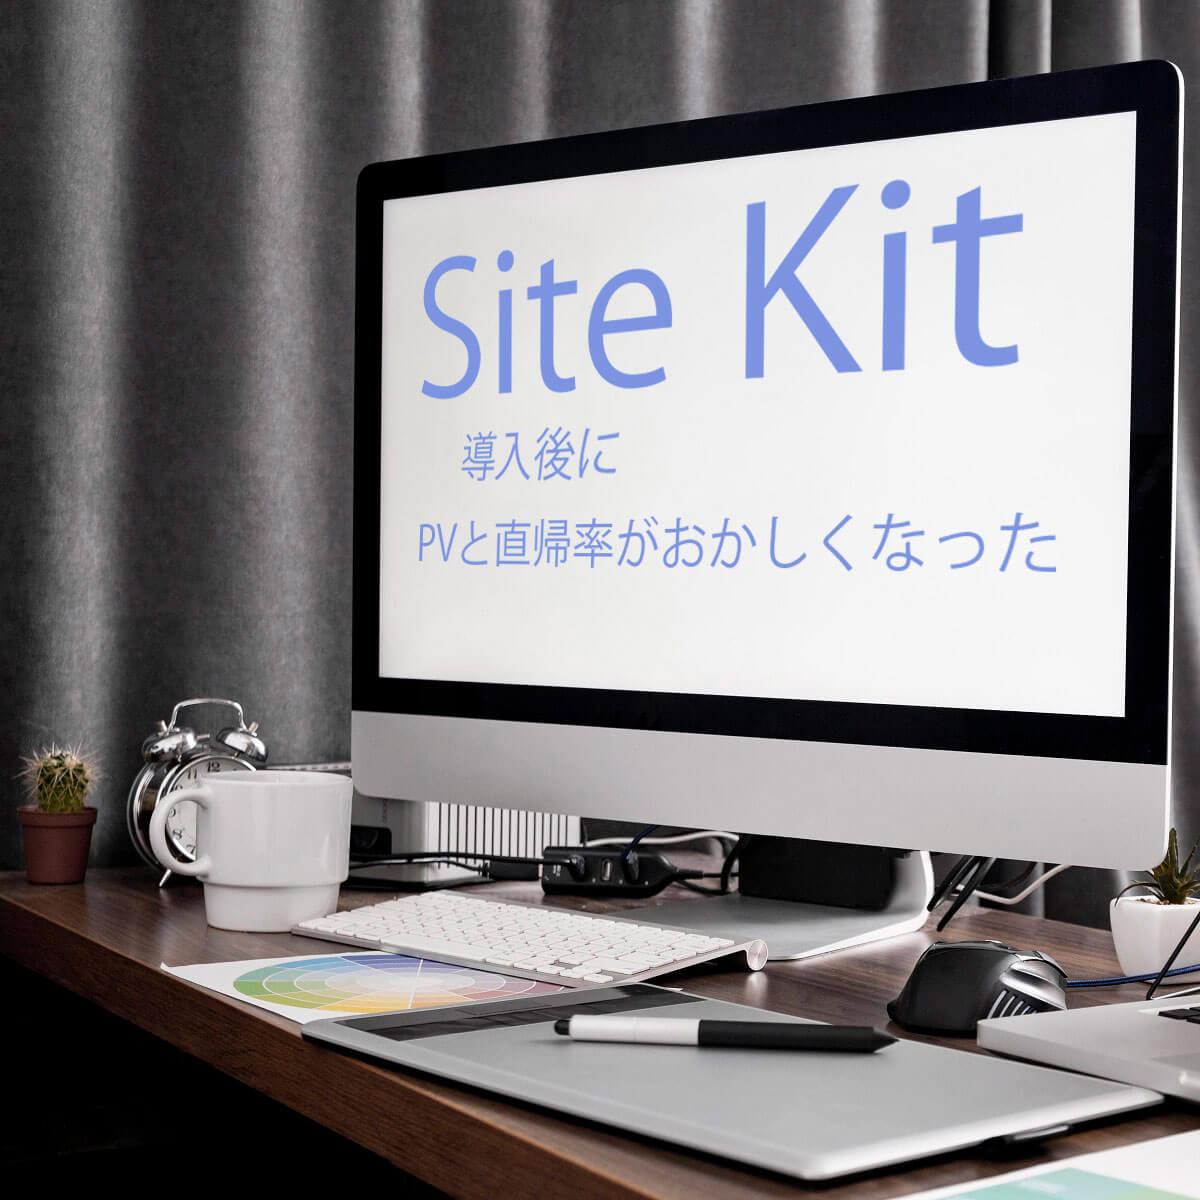 パソコンの画像。画面に「Site Kit 導入後に、PVと直帰率がおかしくなった」と表示されている。